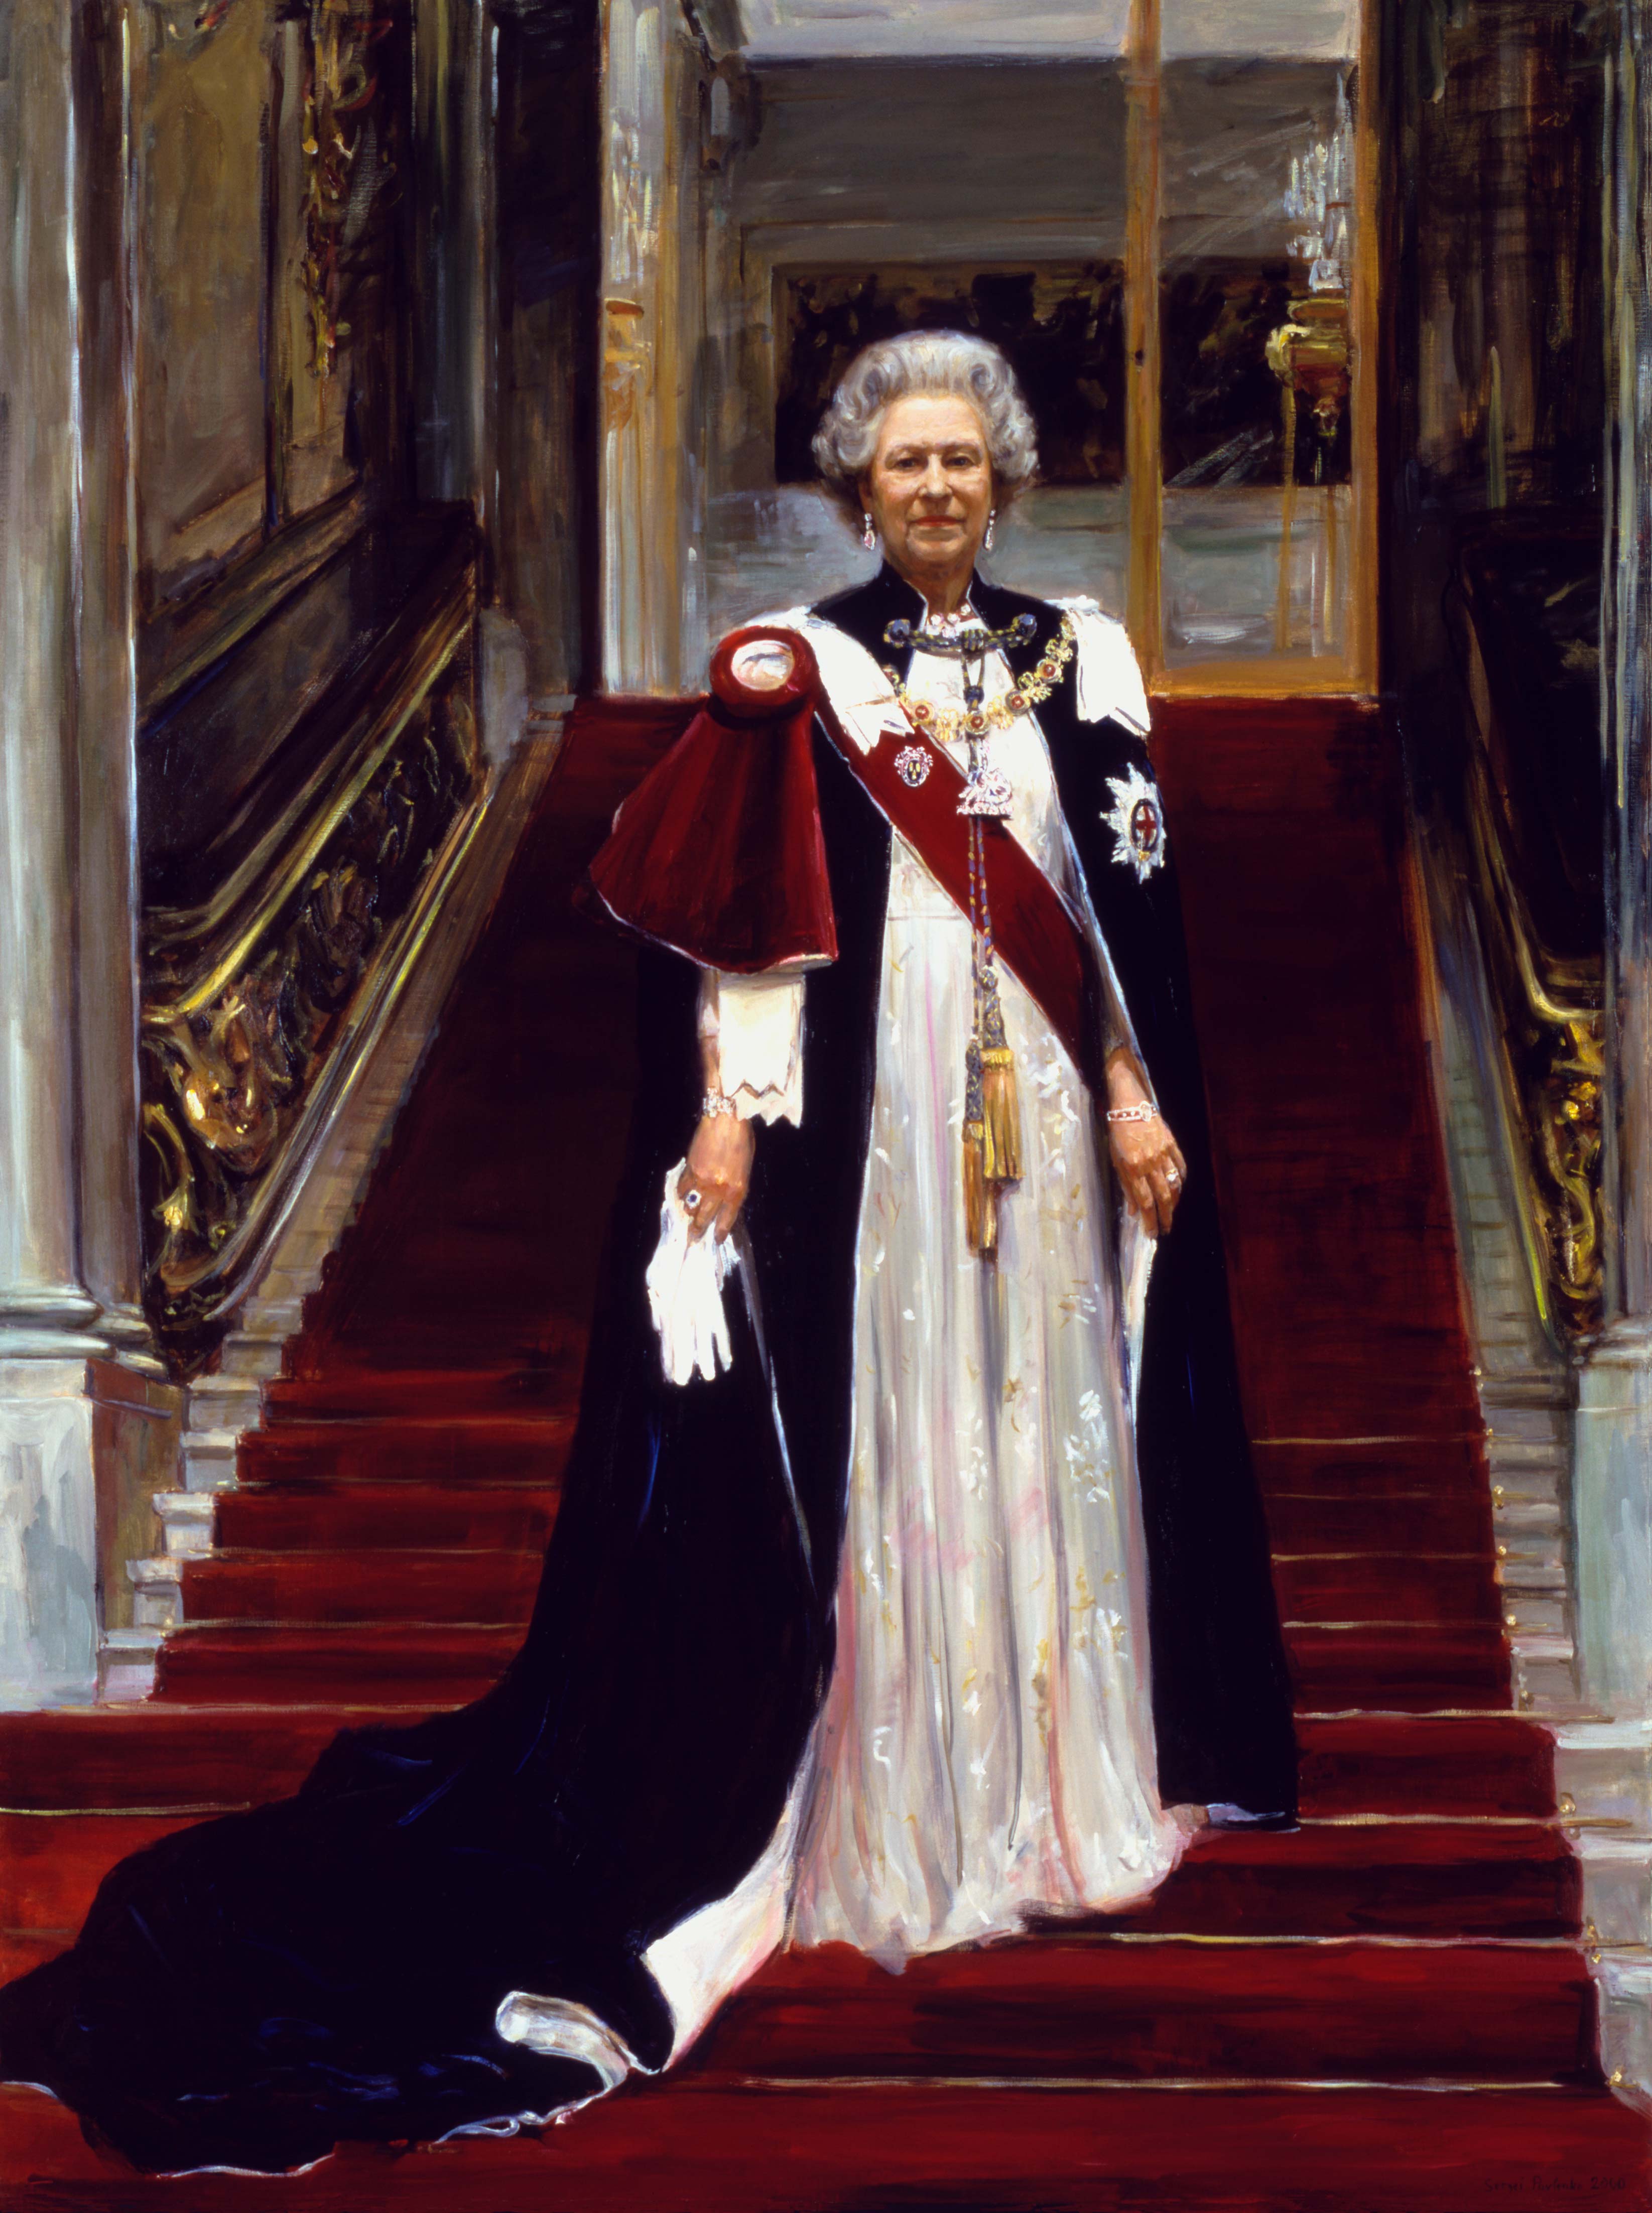 The Portrait of Elizabeth II - 1, Sergei Pavlenko, 买画 油